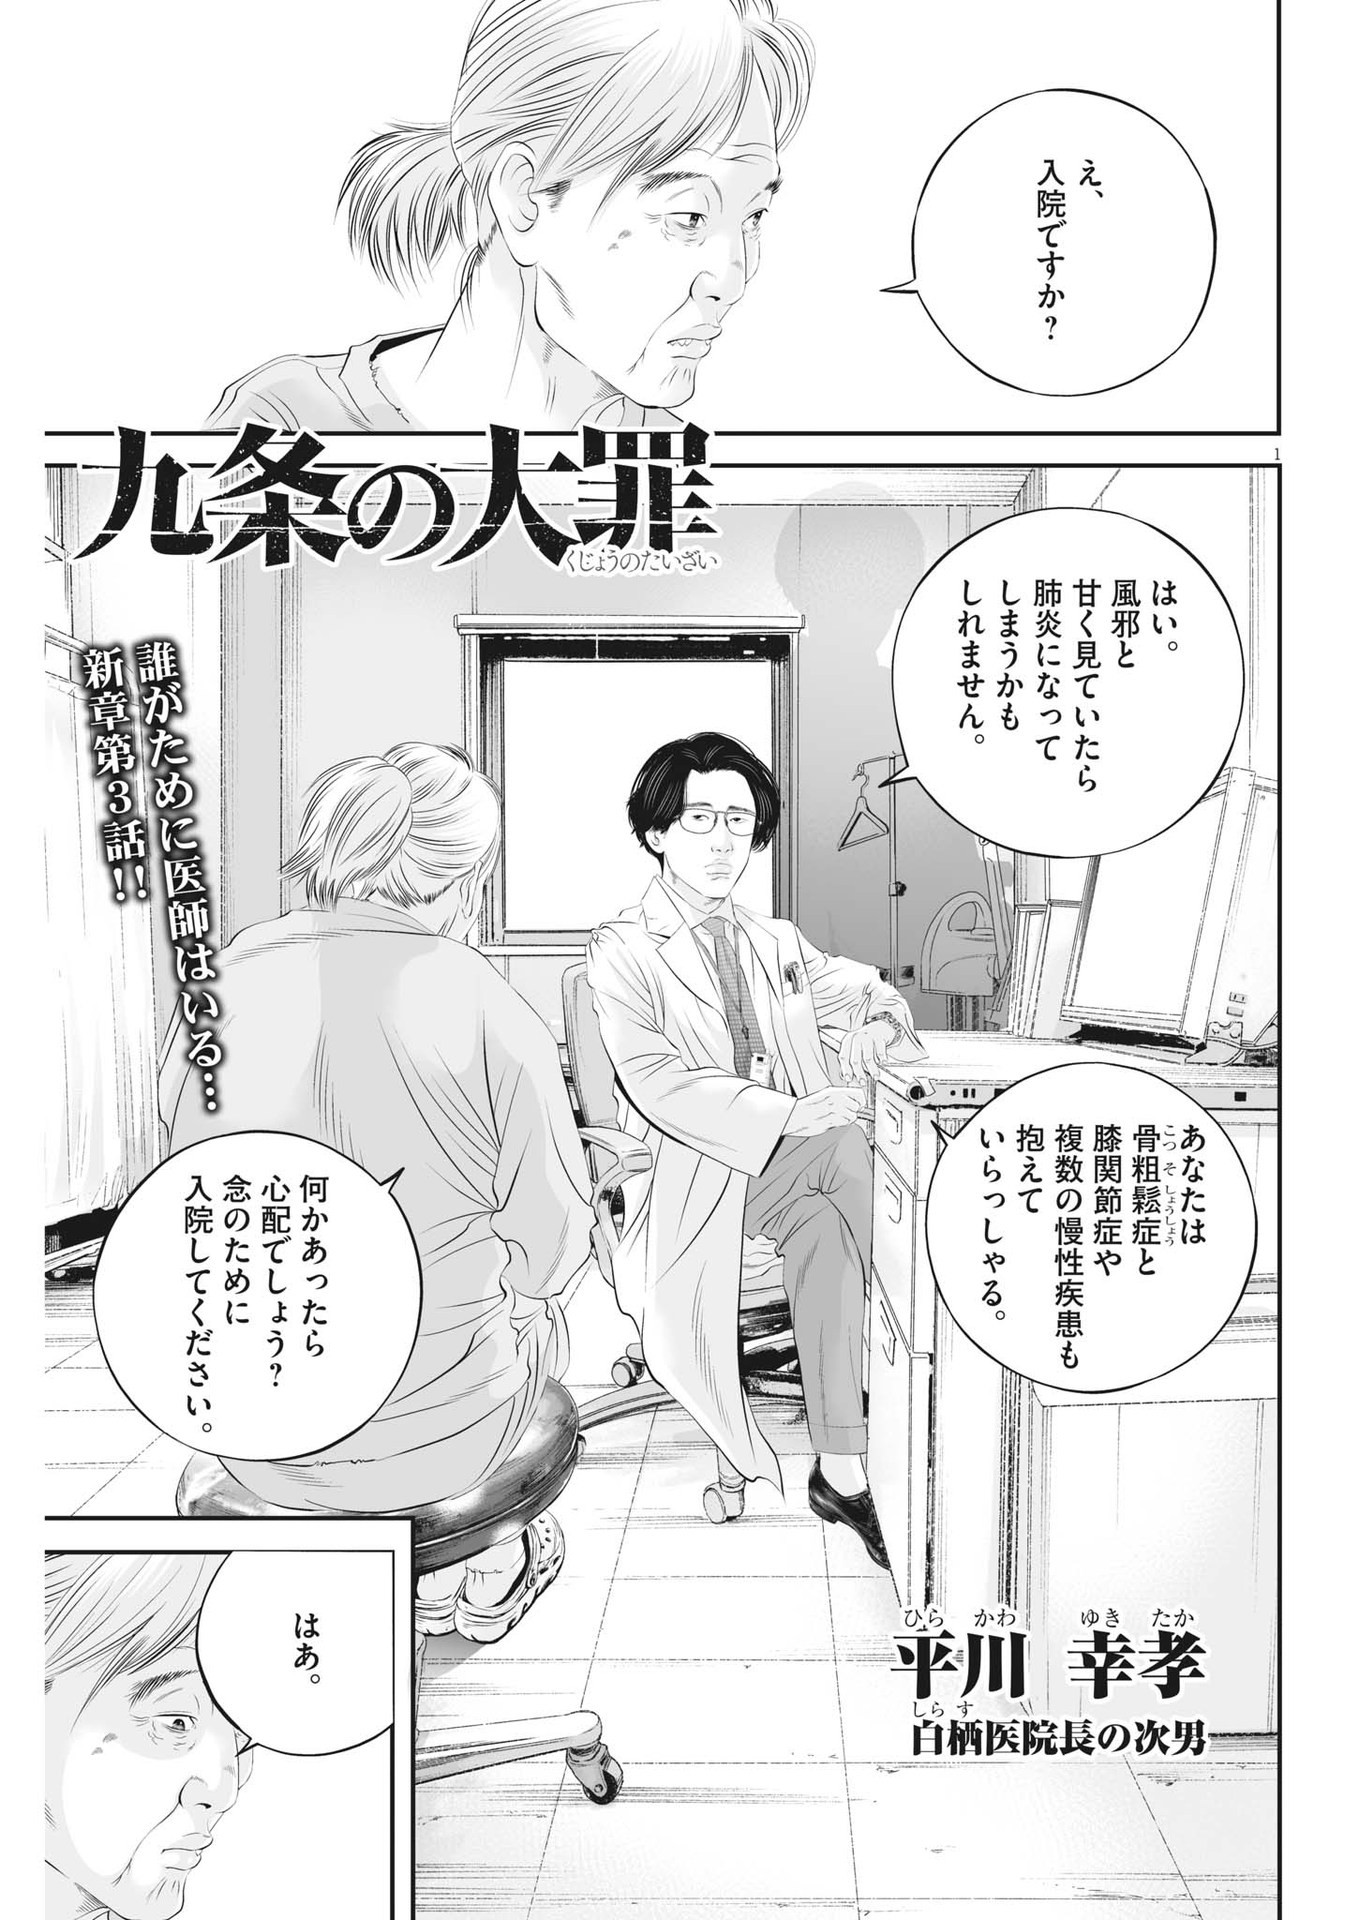 Kujou no Taizai - Chapter 94 - Page 1